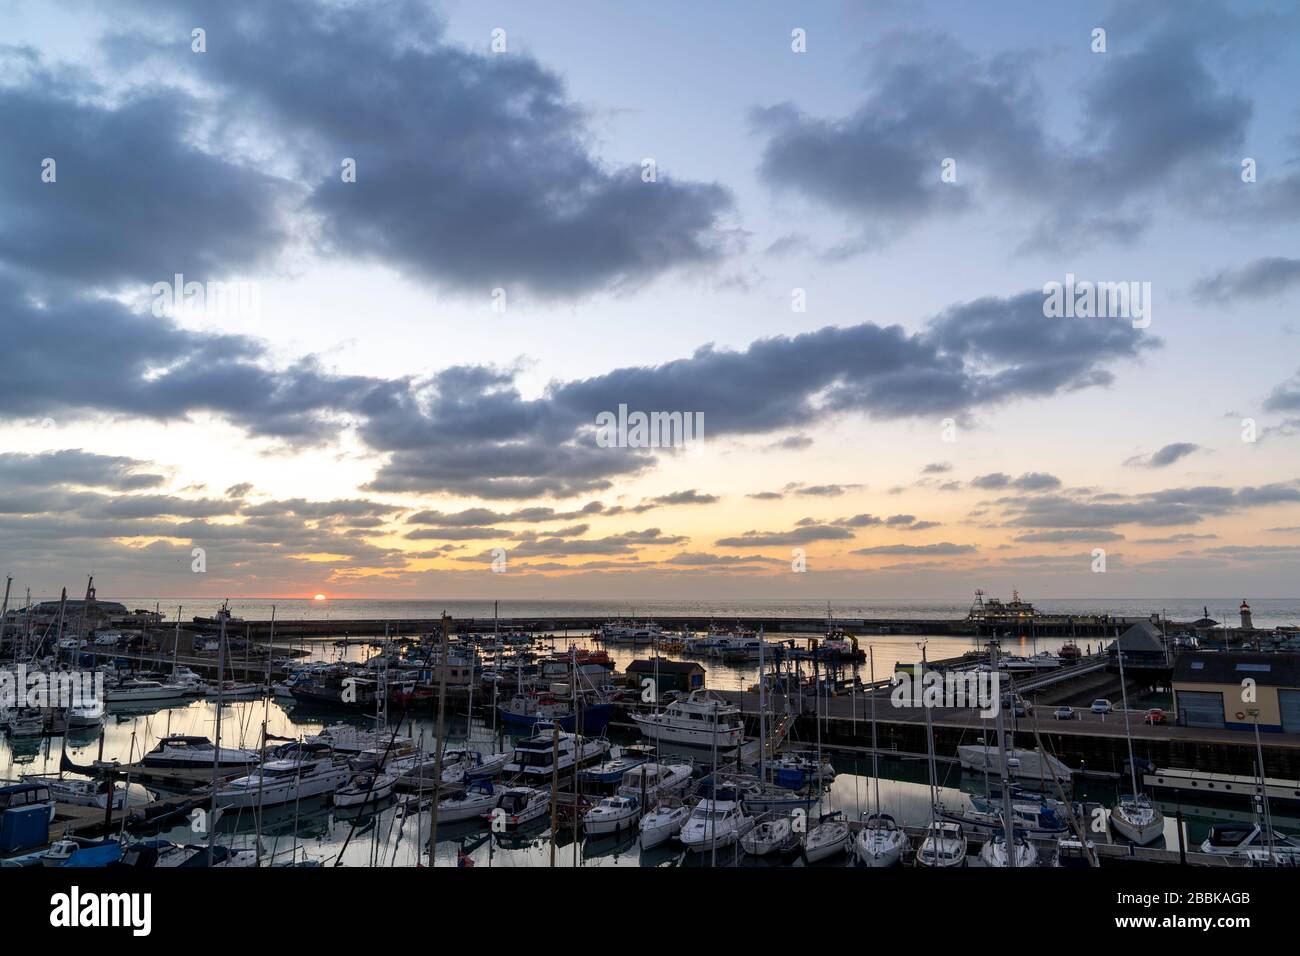 Alba sul porto di Ramsgate e il canale della Manica. Porto in primo piano con marina da diporto, sullo sfondo il sole che sorge sopra il mare in un cielo sparso di nuvole scure. Foto Stock